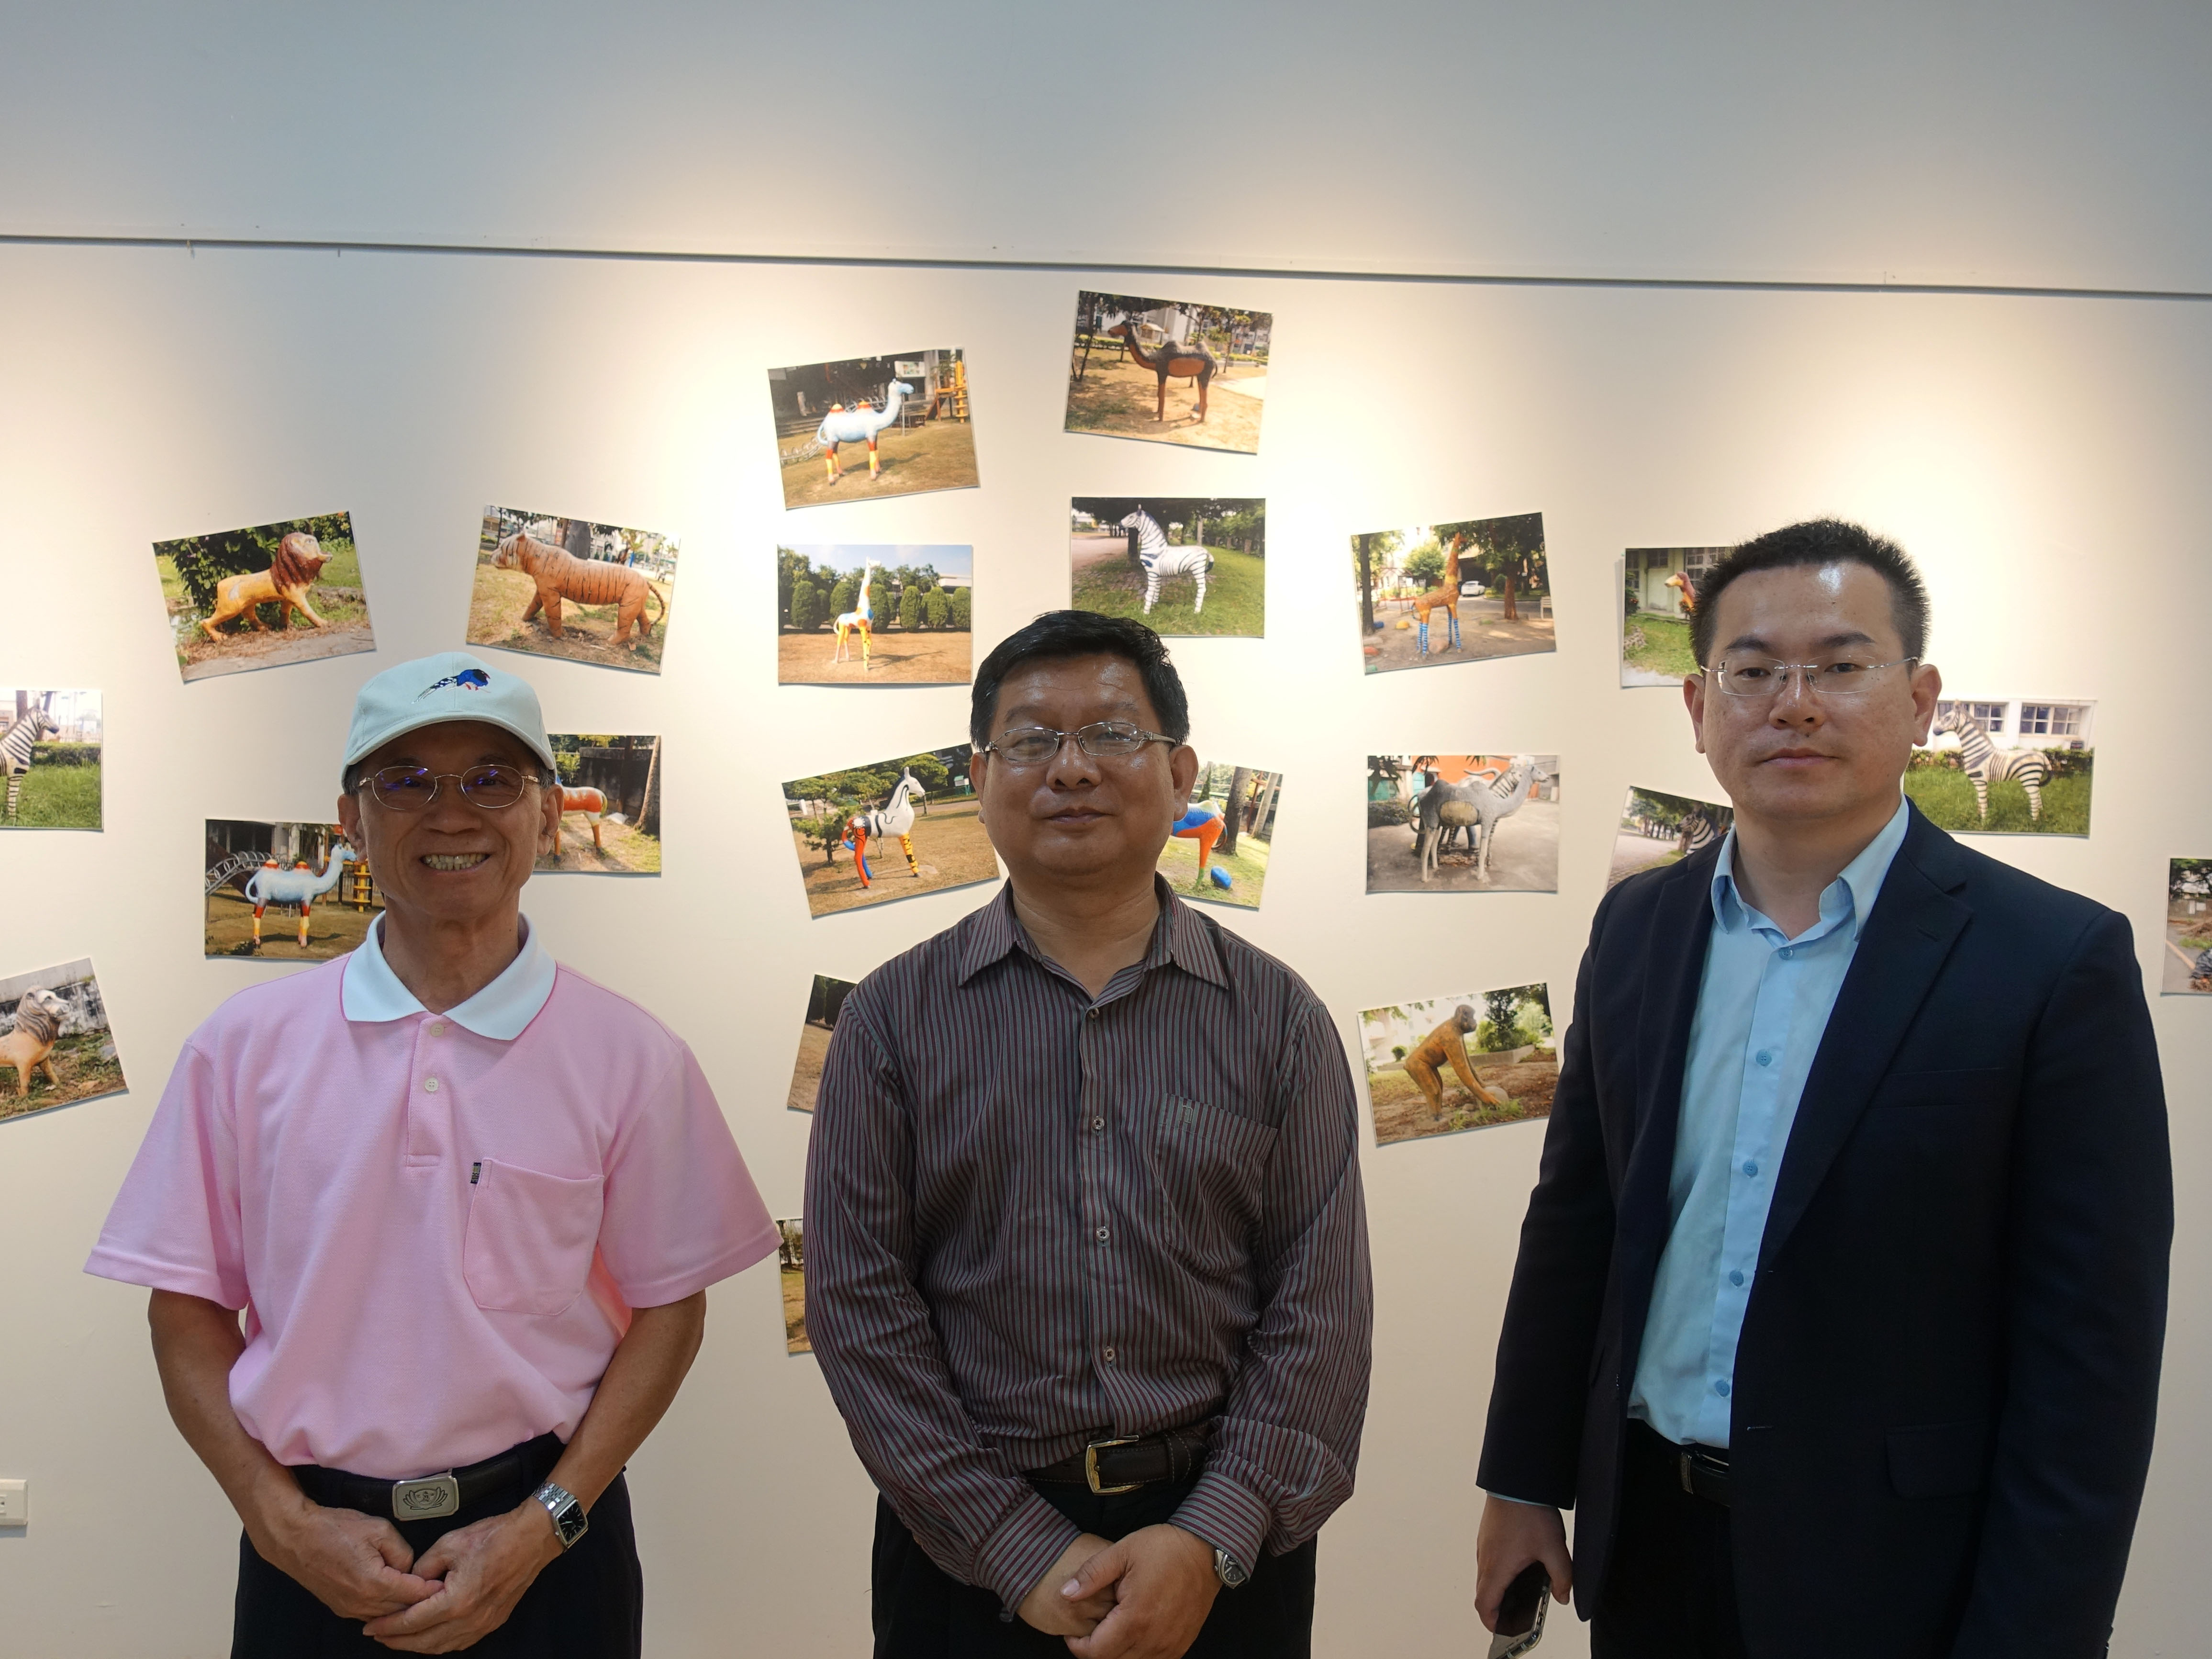 策展人陳俊德(右)、藝術家蔡滄龍(中)與導覽志工吳聰能(左)先生合影。